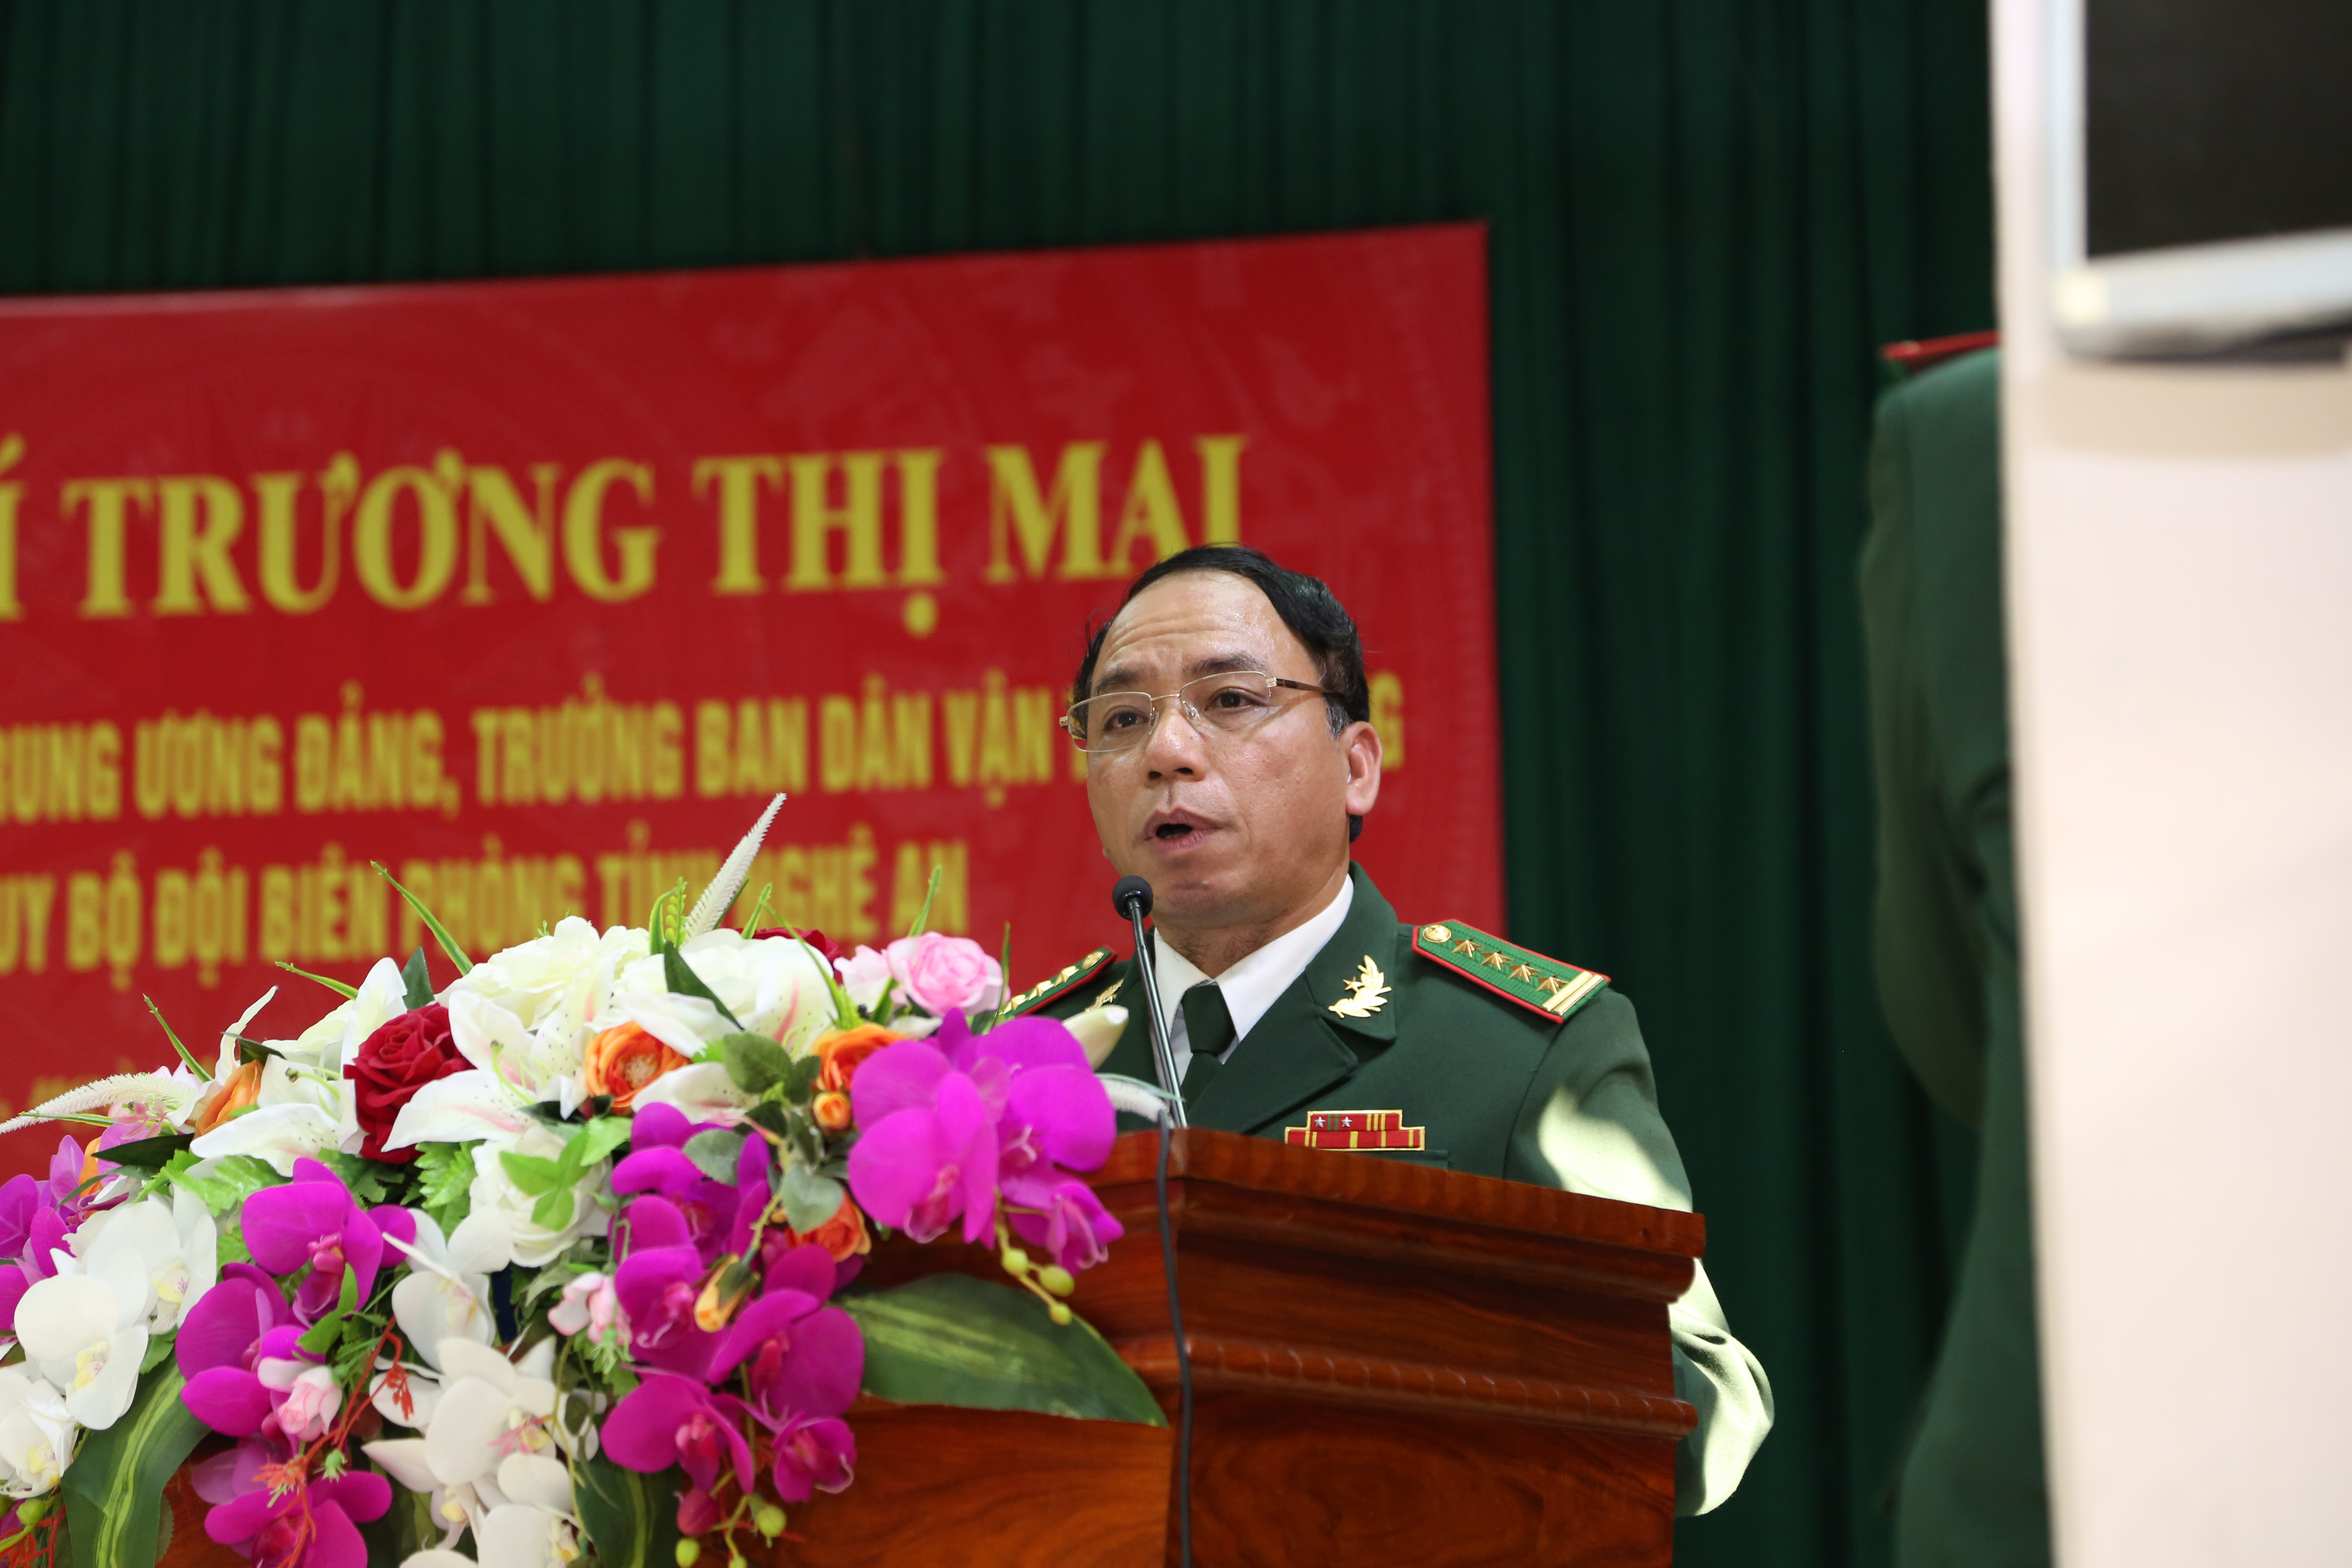 Đại tá Lê Hải Bình - Chỉ huy trưởng Bộ Chỉ huy BĐBP tỉnh Nghệ An báo cáo với đoàn công tác. Ảnh: Đào Tuấn 